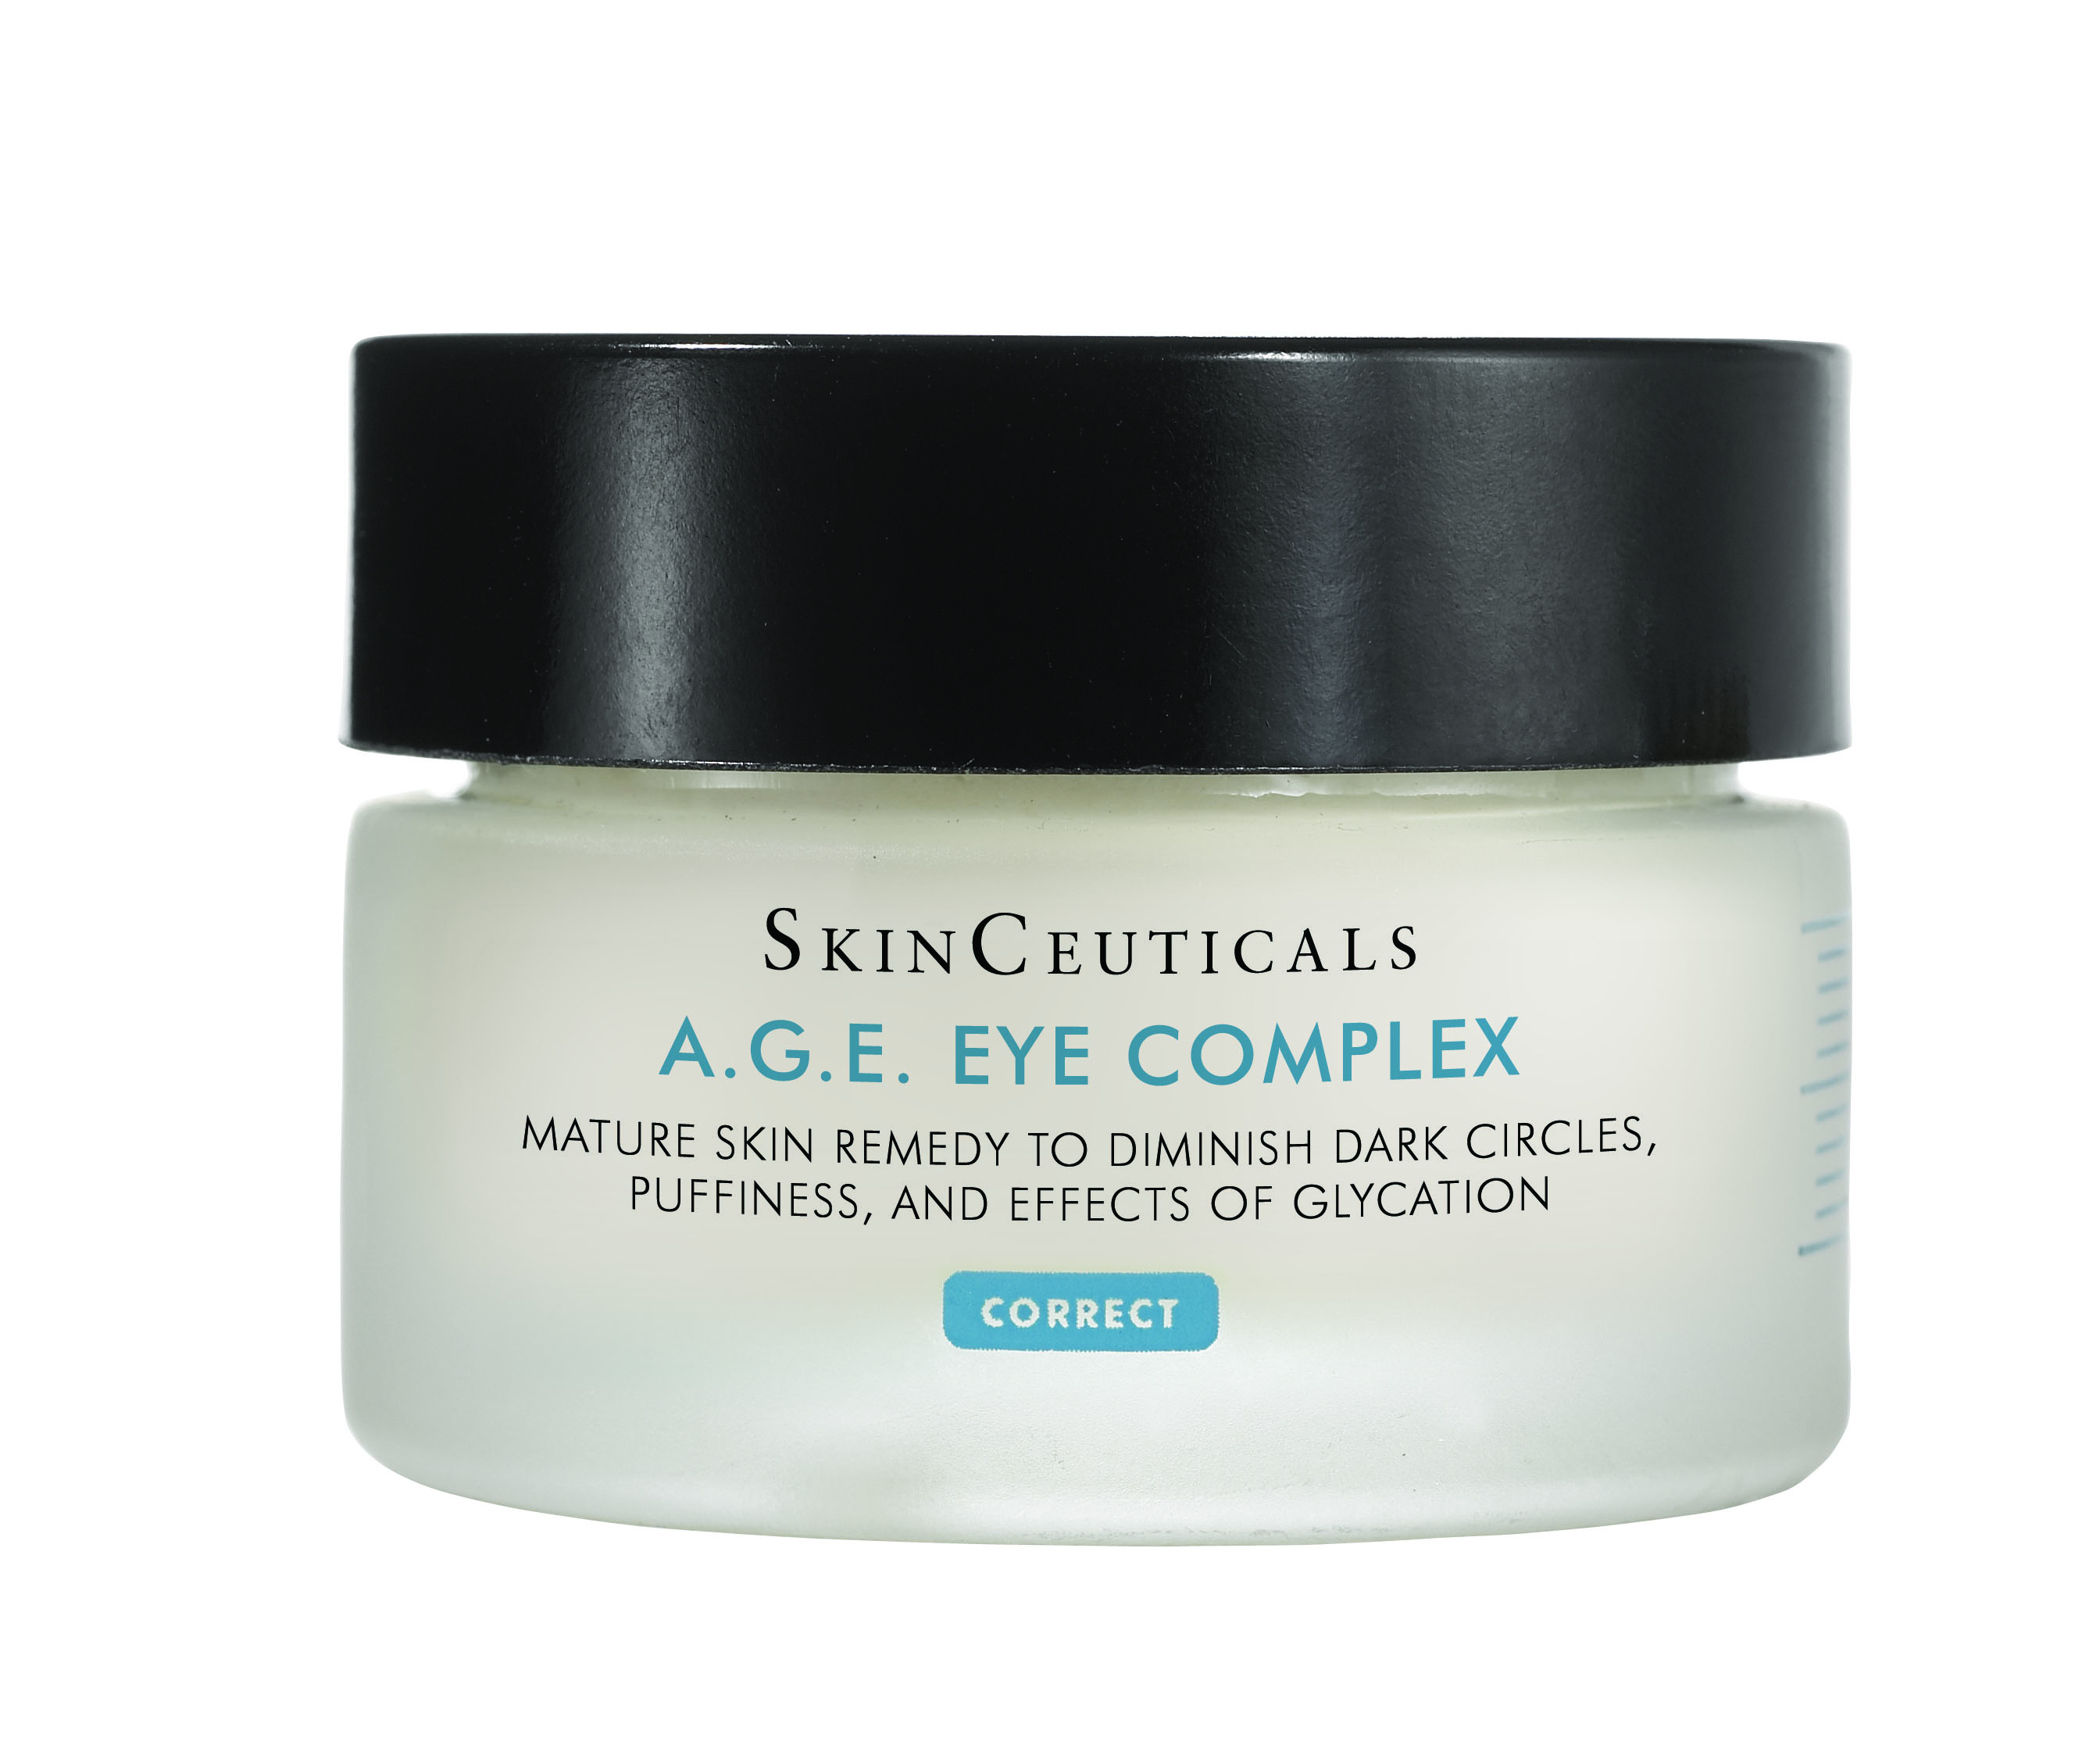 A.G.E. Eye Complex SkinCeuticals 15ml